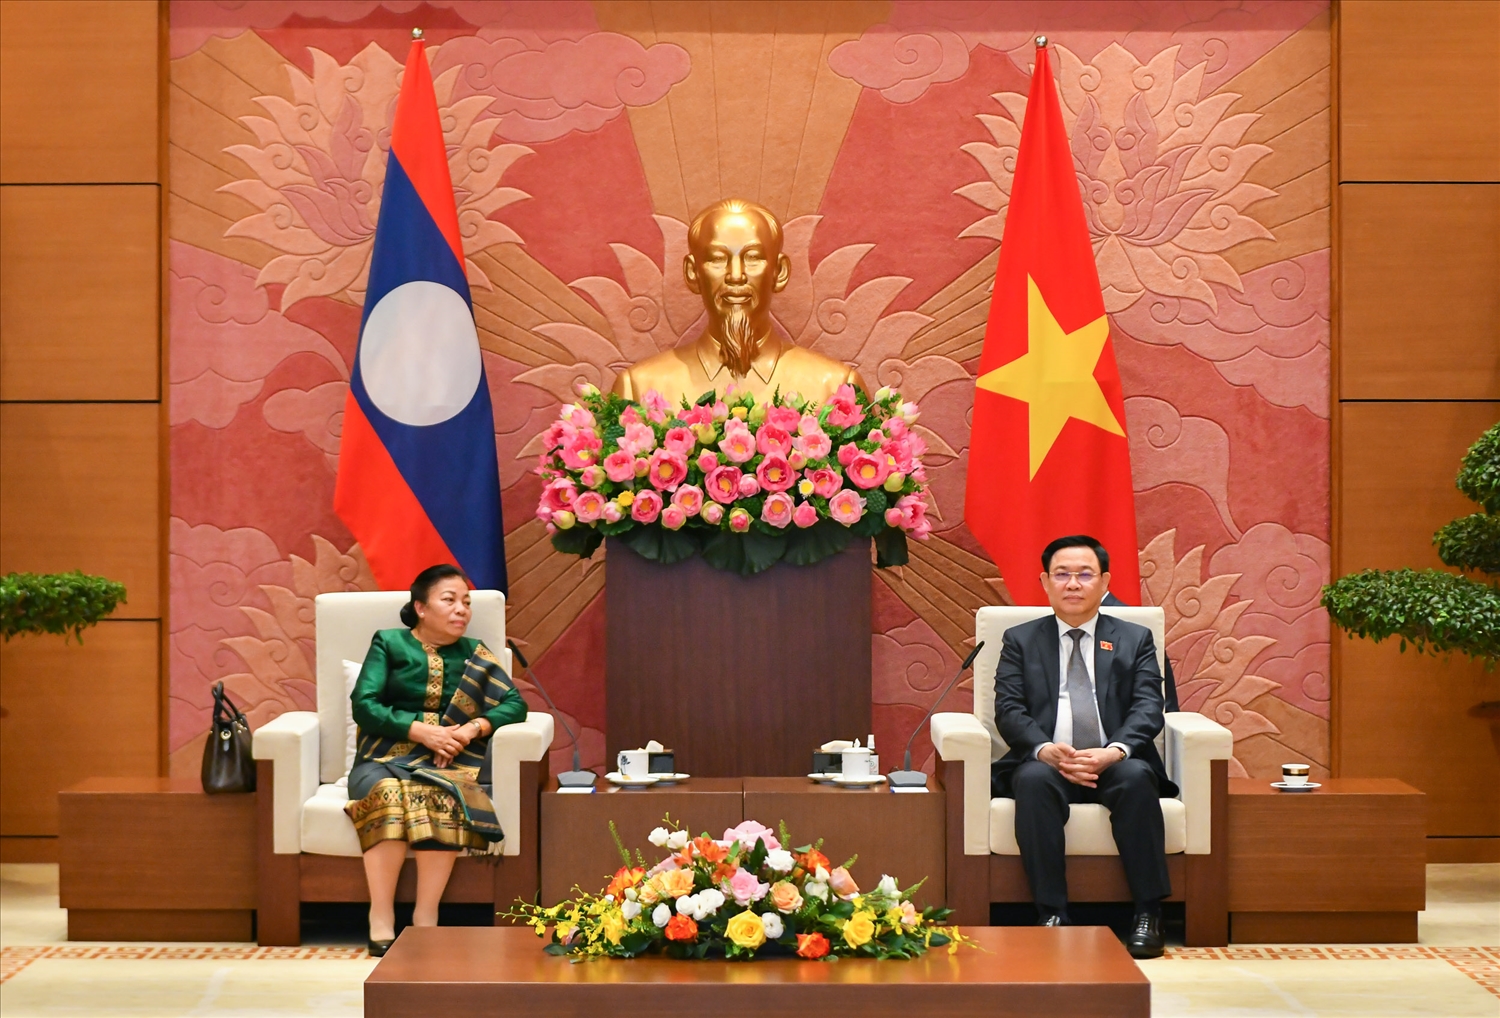 Tại cuộc tiếp, hai bên khẳng định quan hệ hữu nghị vĩ đại, đoàn kết đặc biệt và hợp tác toàn diện Việt Nam – Lào,"có 1 không 2" giữa hai nước